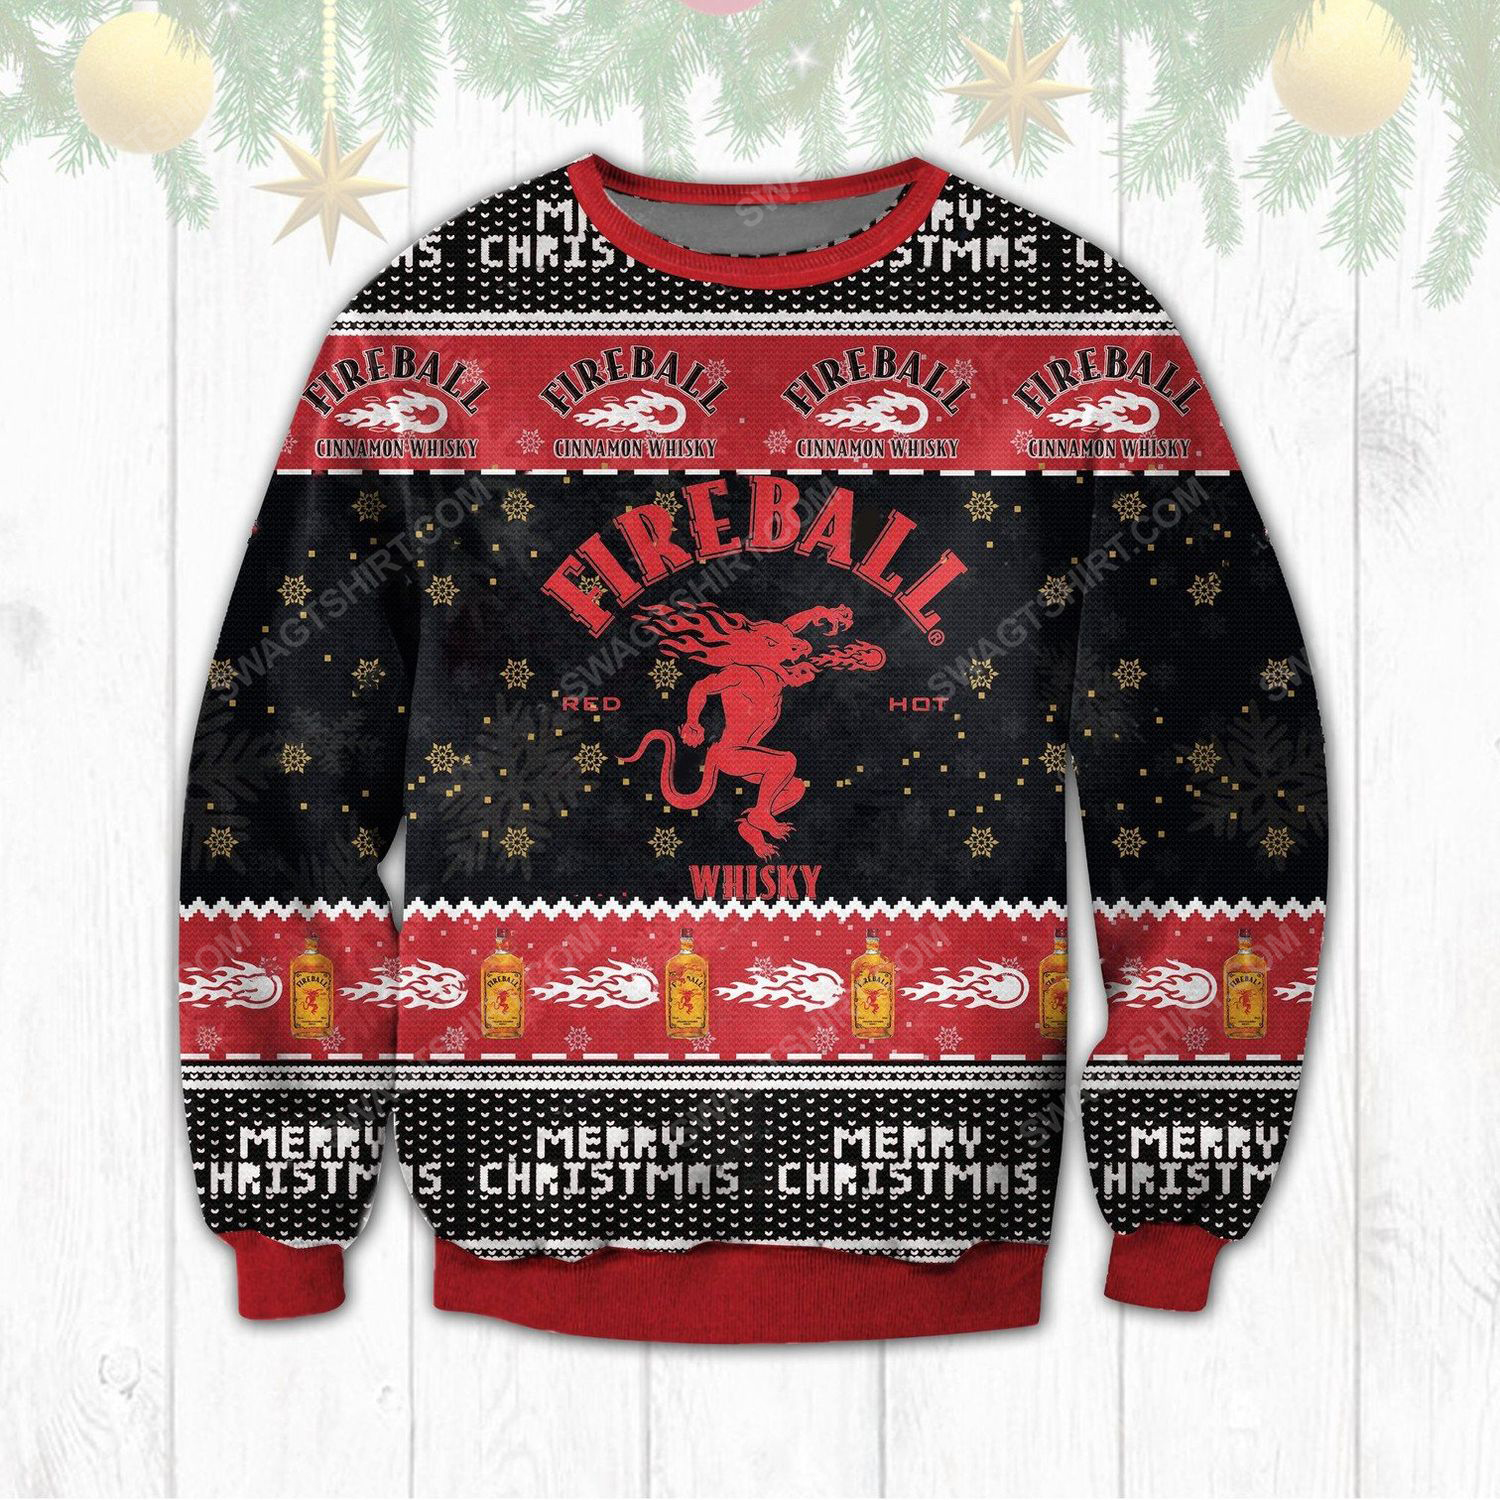 Fireball cinnamon whisky ugly christmas sweater